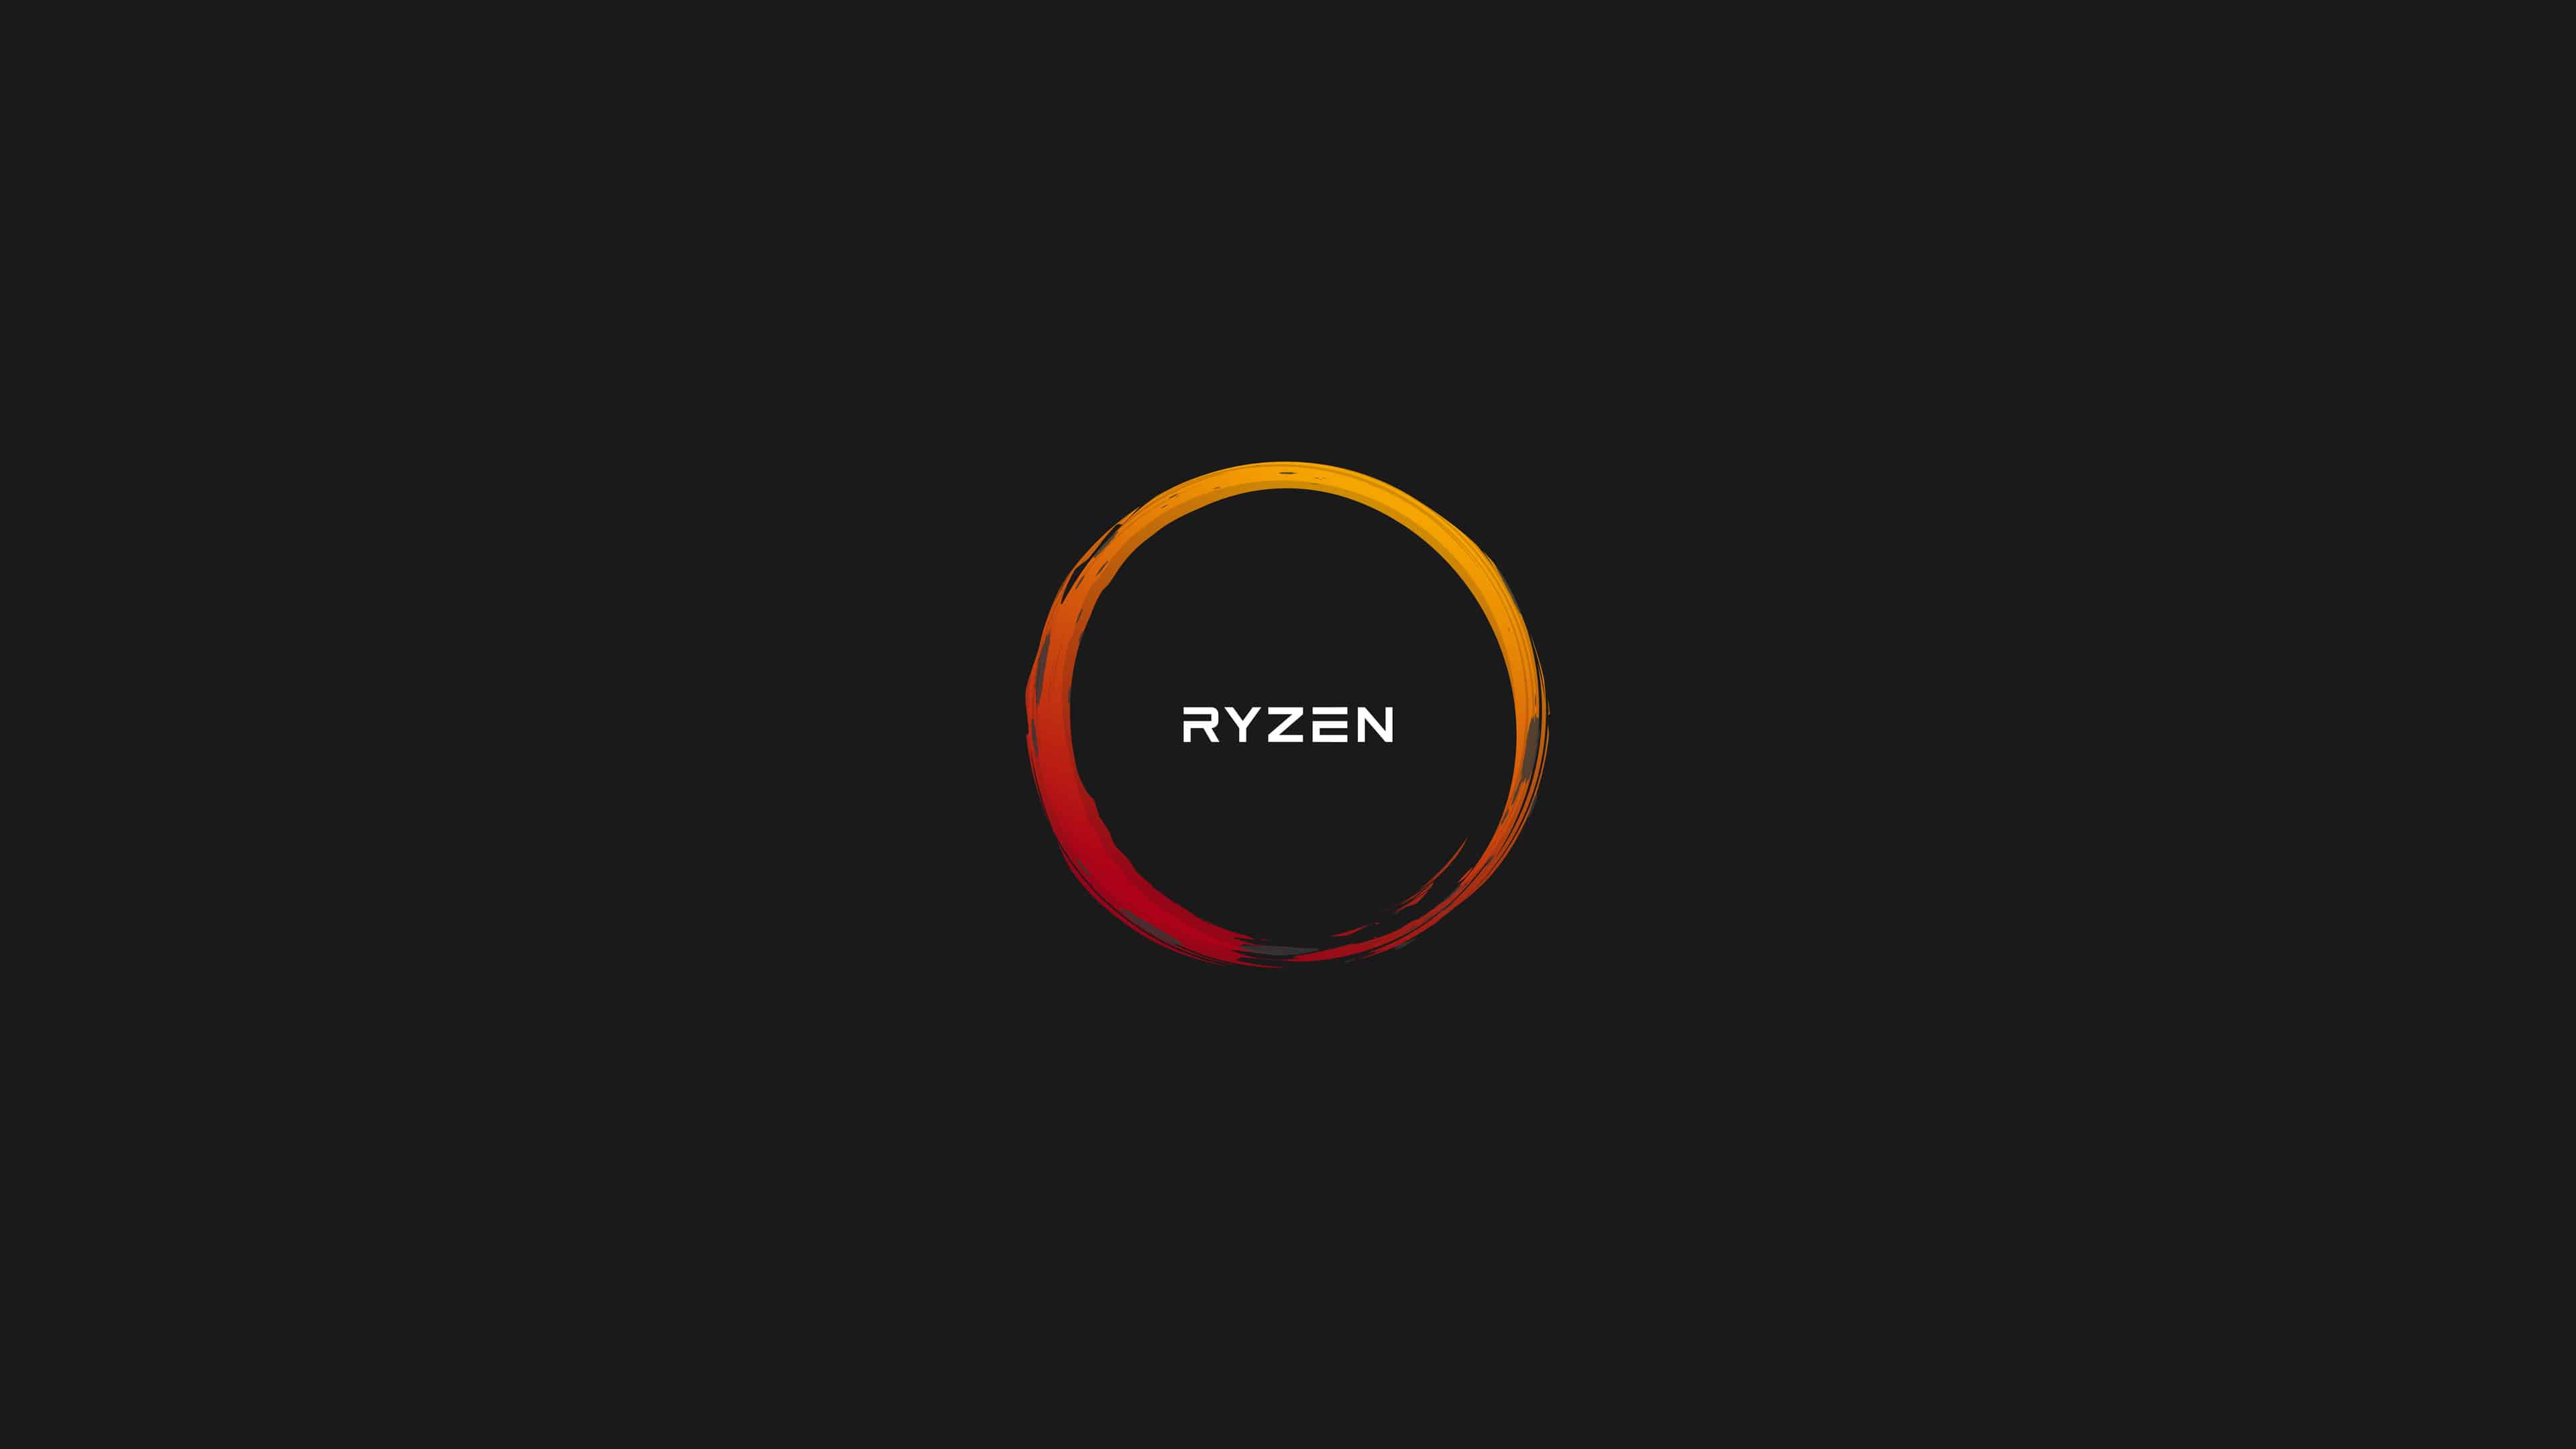 AMD 4K Logo - AMD Ryzen Logo UHD 4K Wallpaper | Pixelz